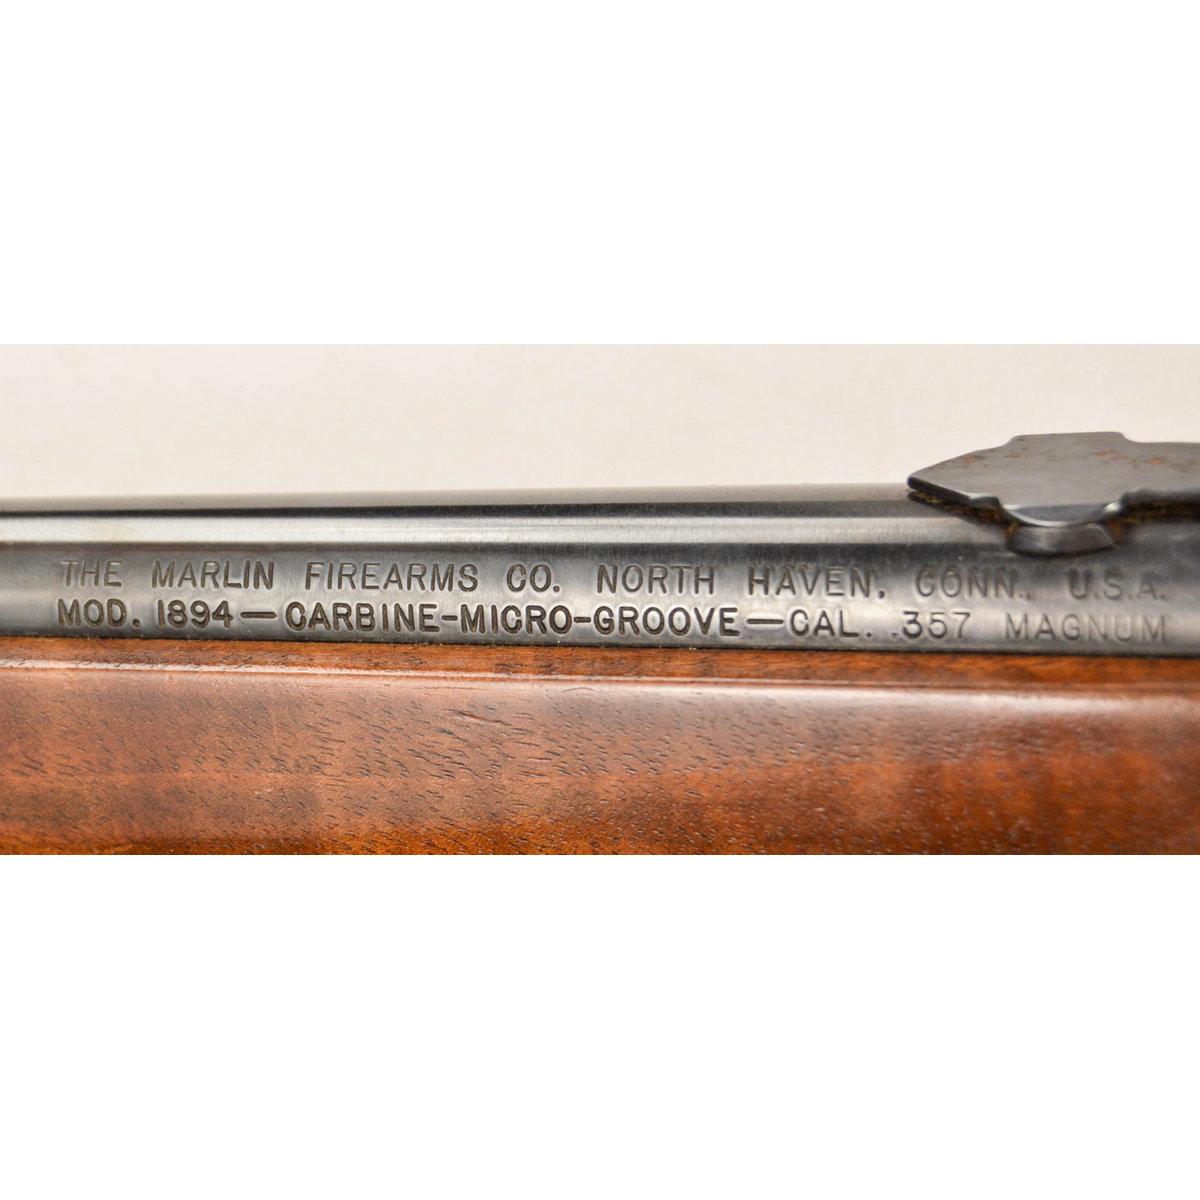 Marlin 1894 Carbine 357 Rifle